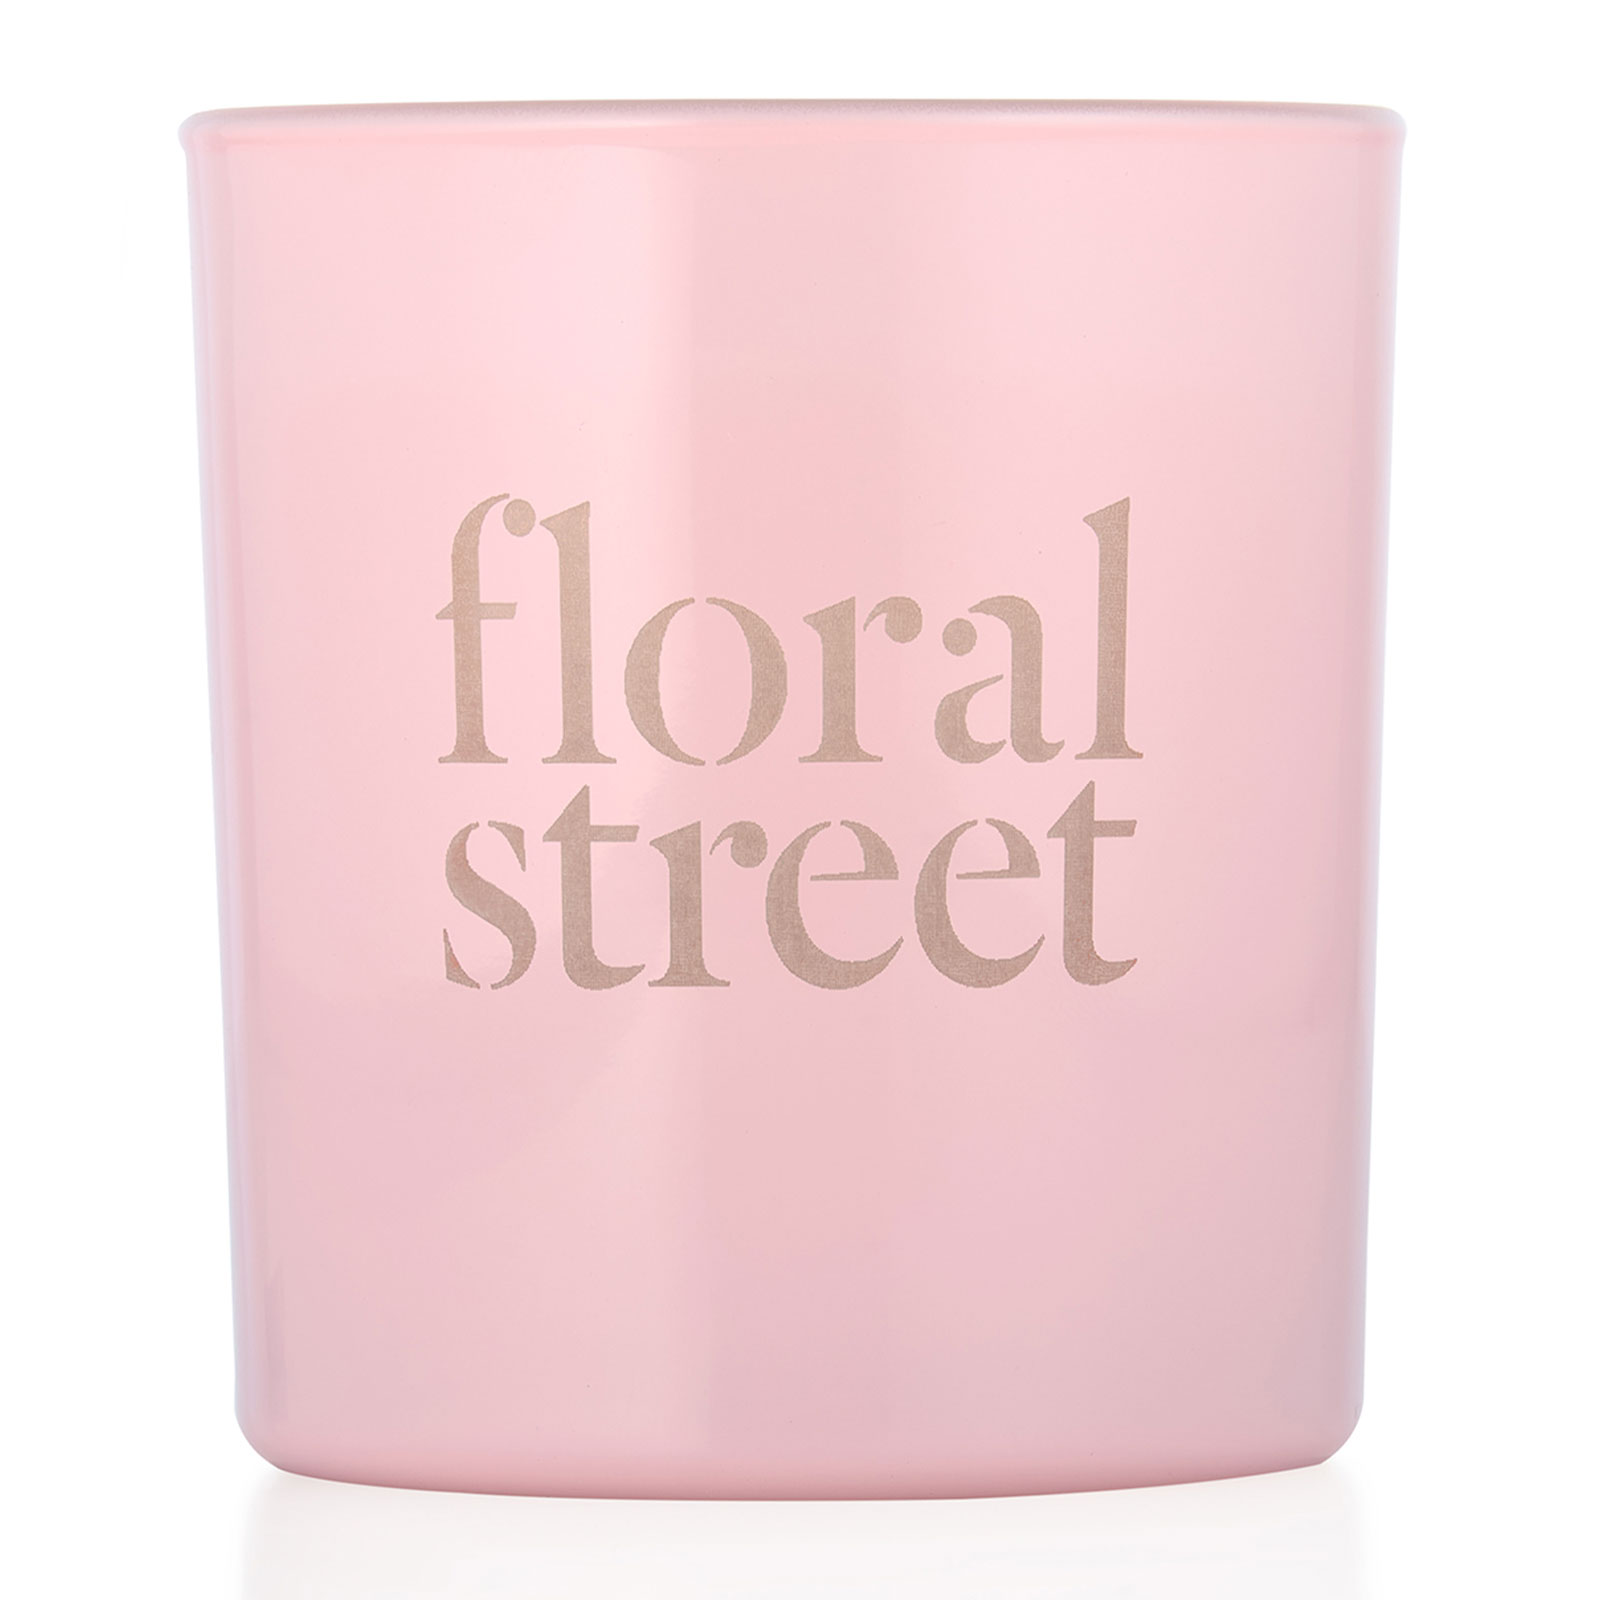 Floral Street Wonderland Bloom Candle 200G